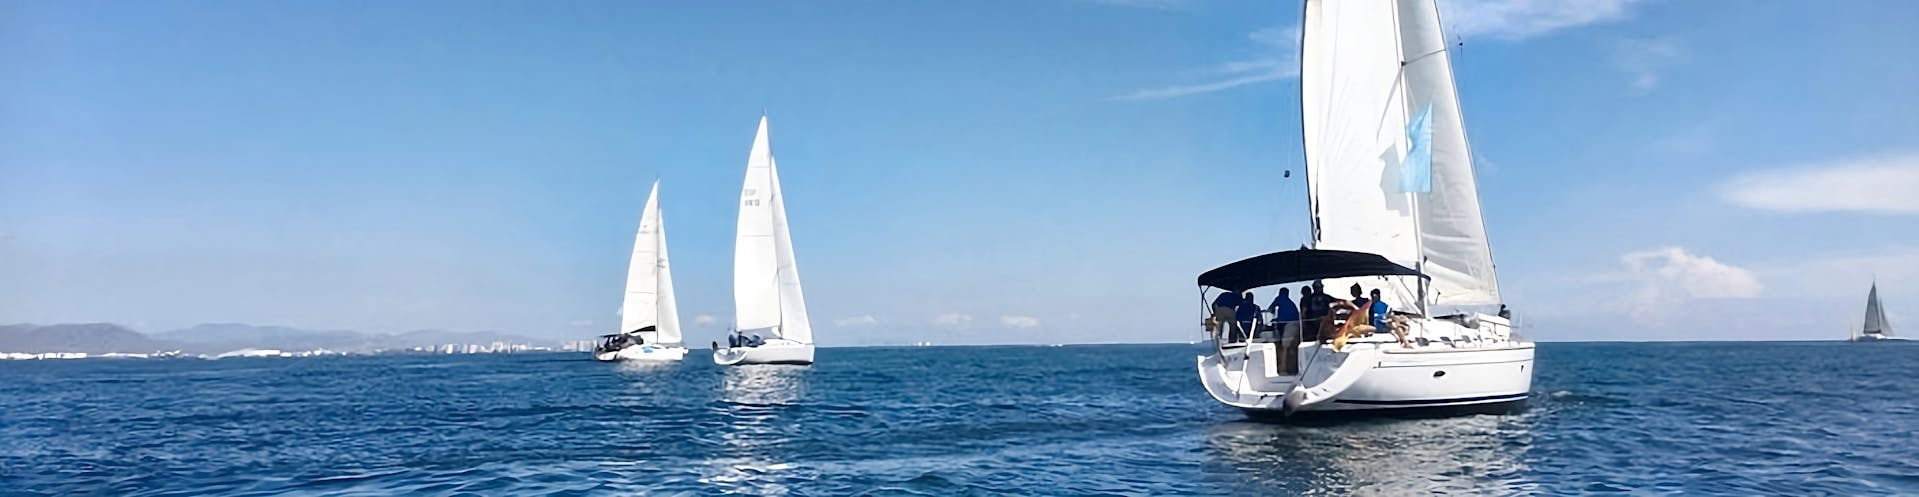 Privé zeilboottocht van Valencia naar Port Saplatja met zwemmen & toeristische attracties